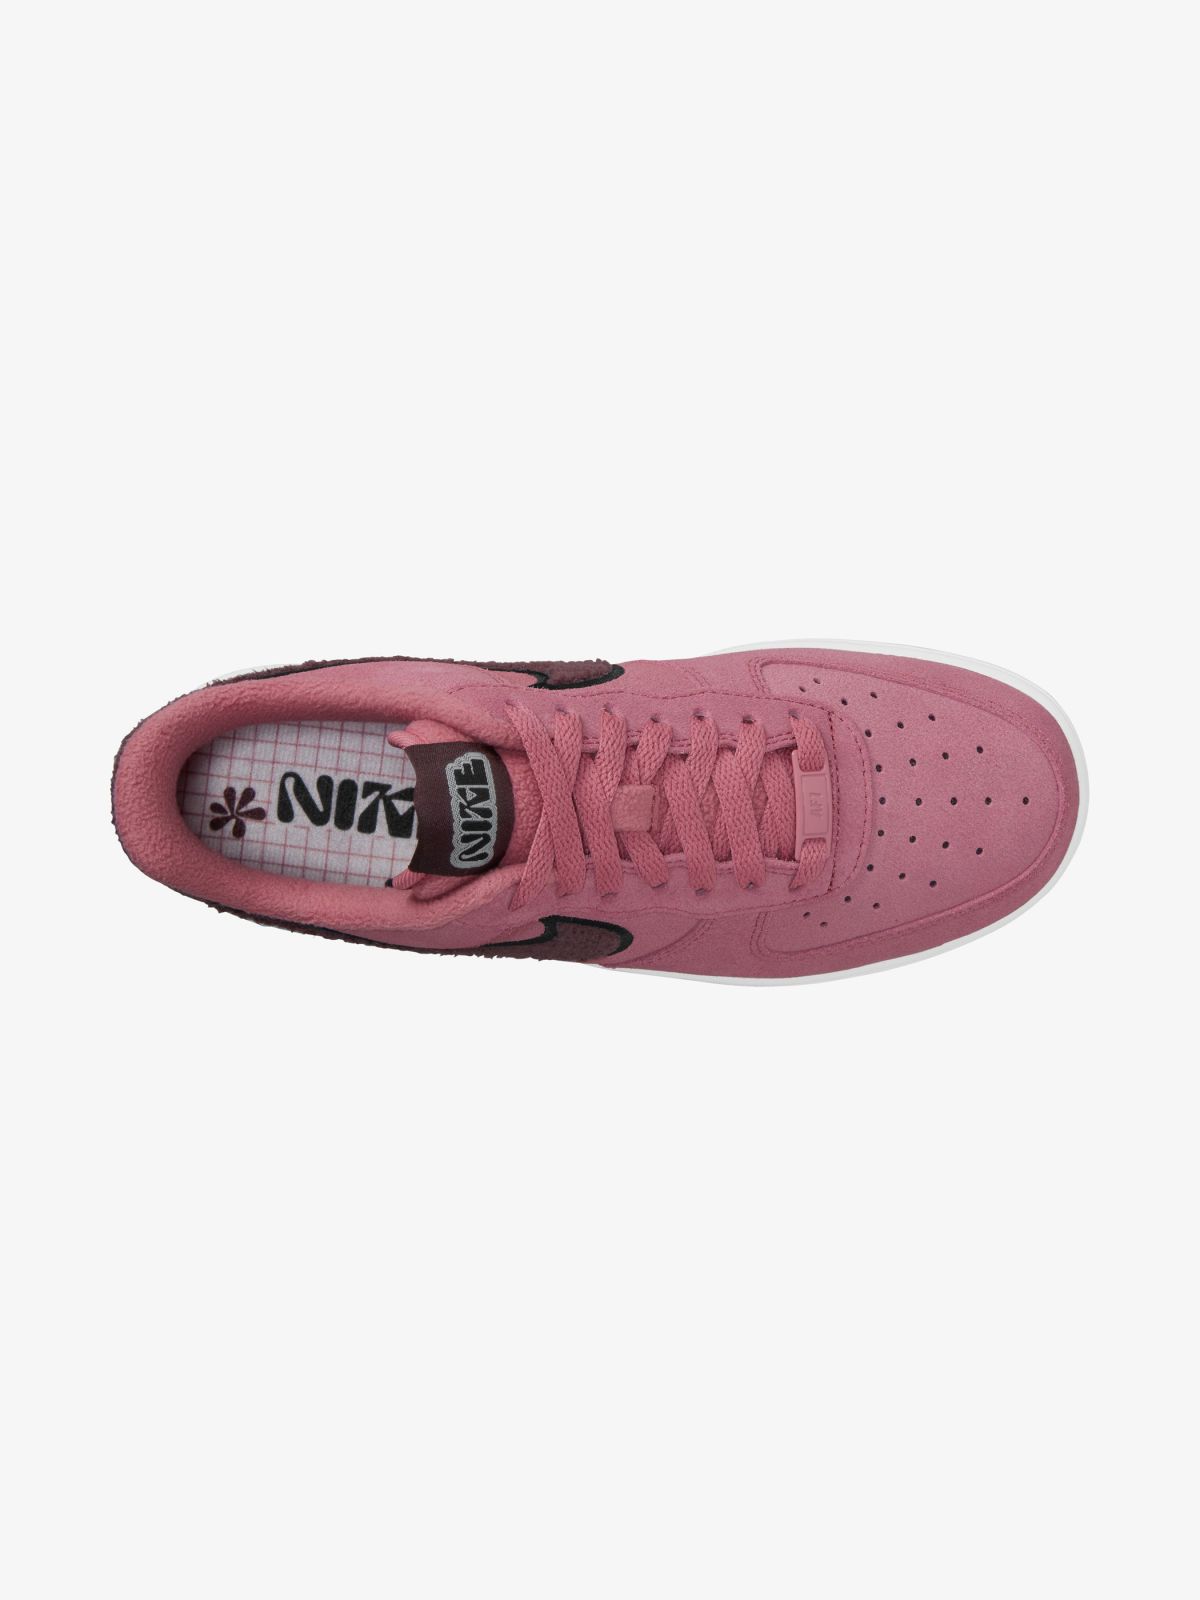  נעלי סניקרס Nike Air Force 1 '07 SE / נשים של NIKE